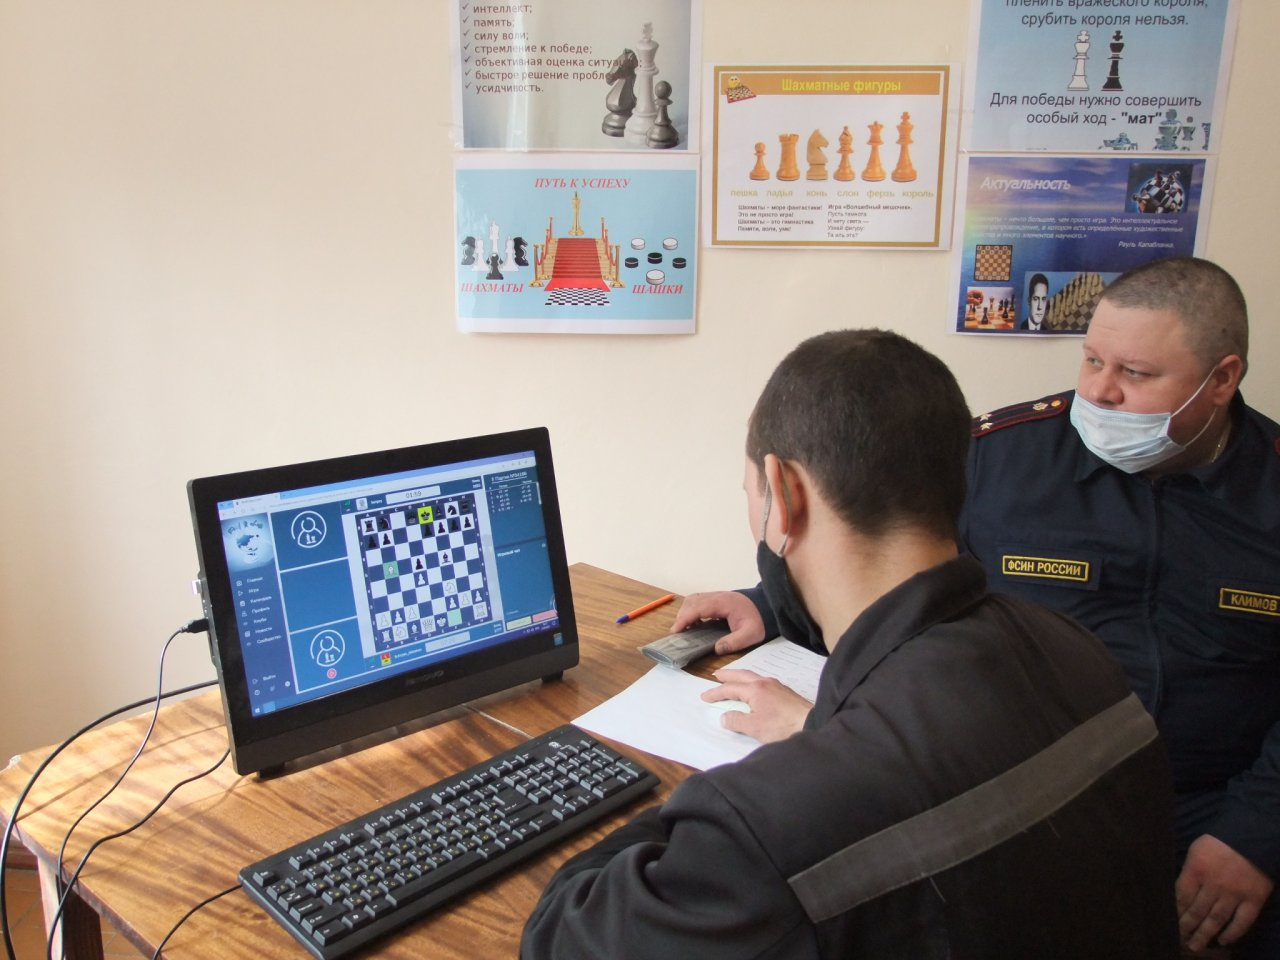 Осуждённый из Вязников победил в международном шахматном турнире